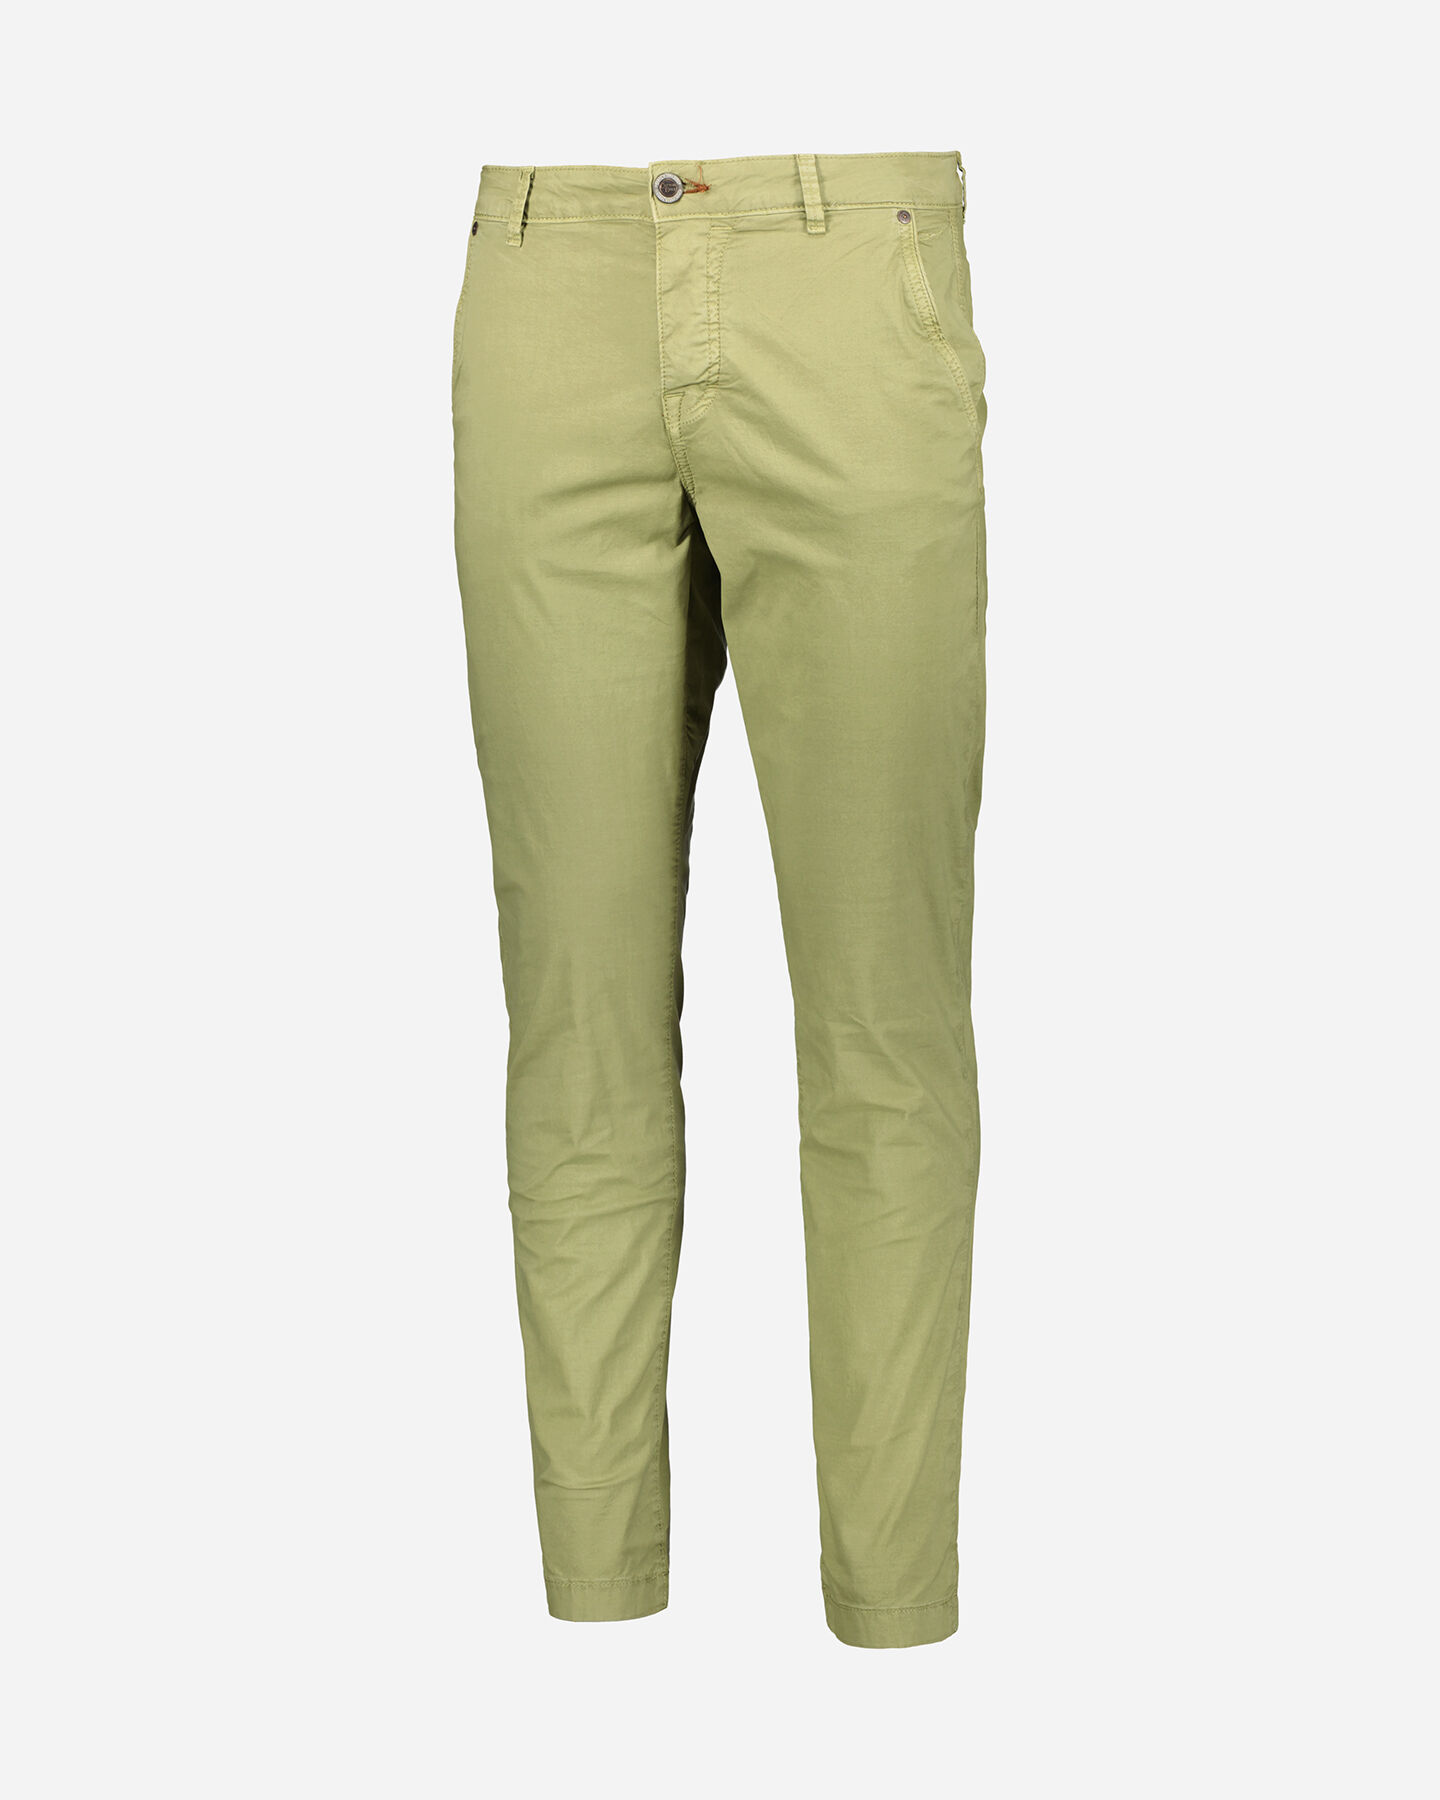  Pantalone COTTON BELT CHINO M S4115866|751|30 scatto 0